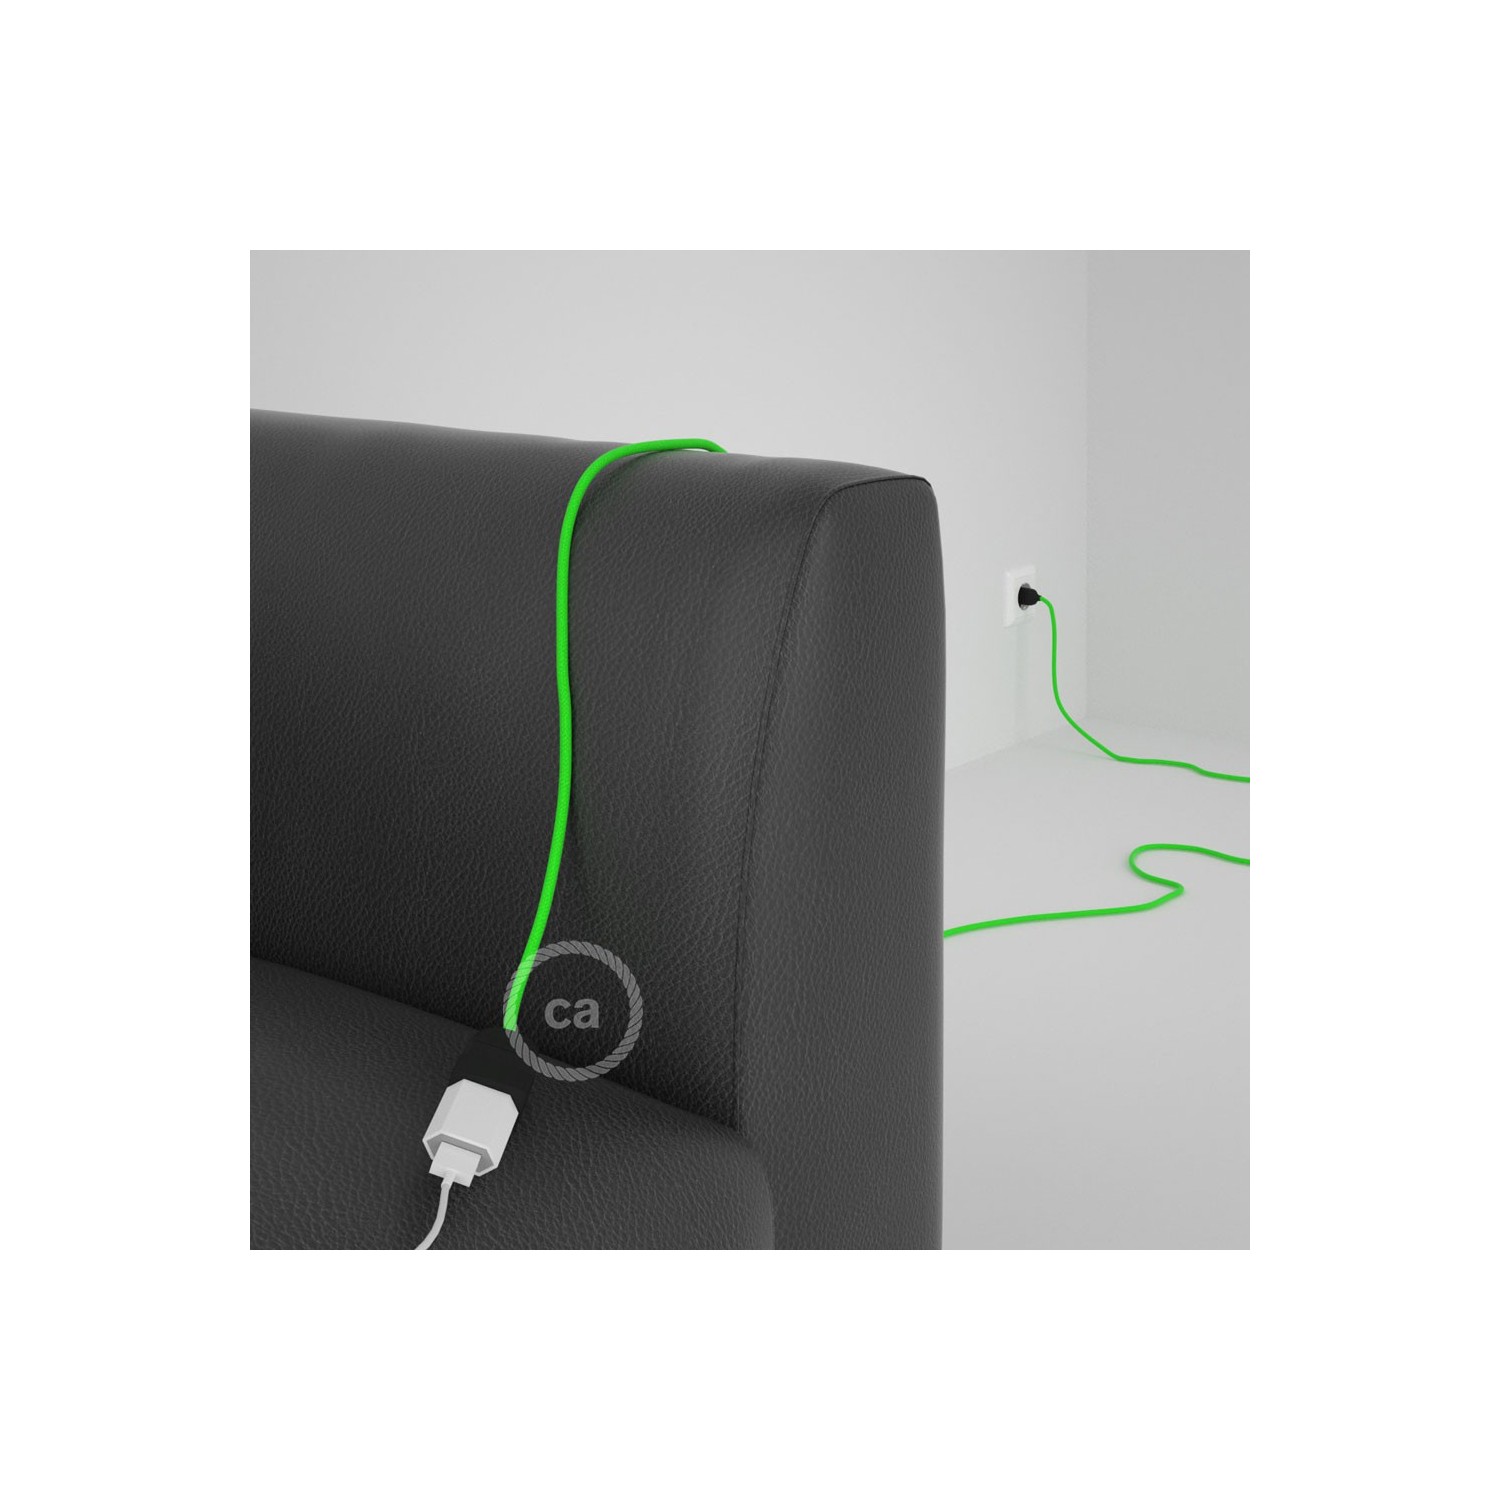 Rallonge électrique avec câble textile RF06 Effet Soie Vert Fluo 2P 10A Made in Italy.